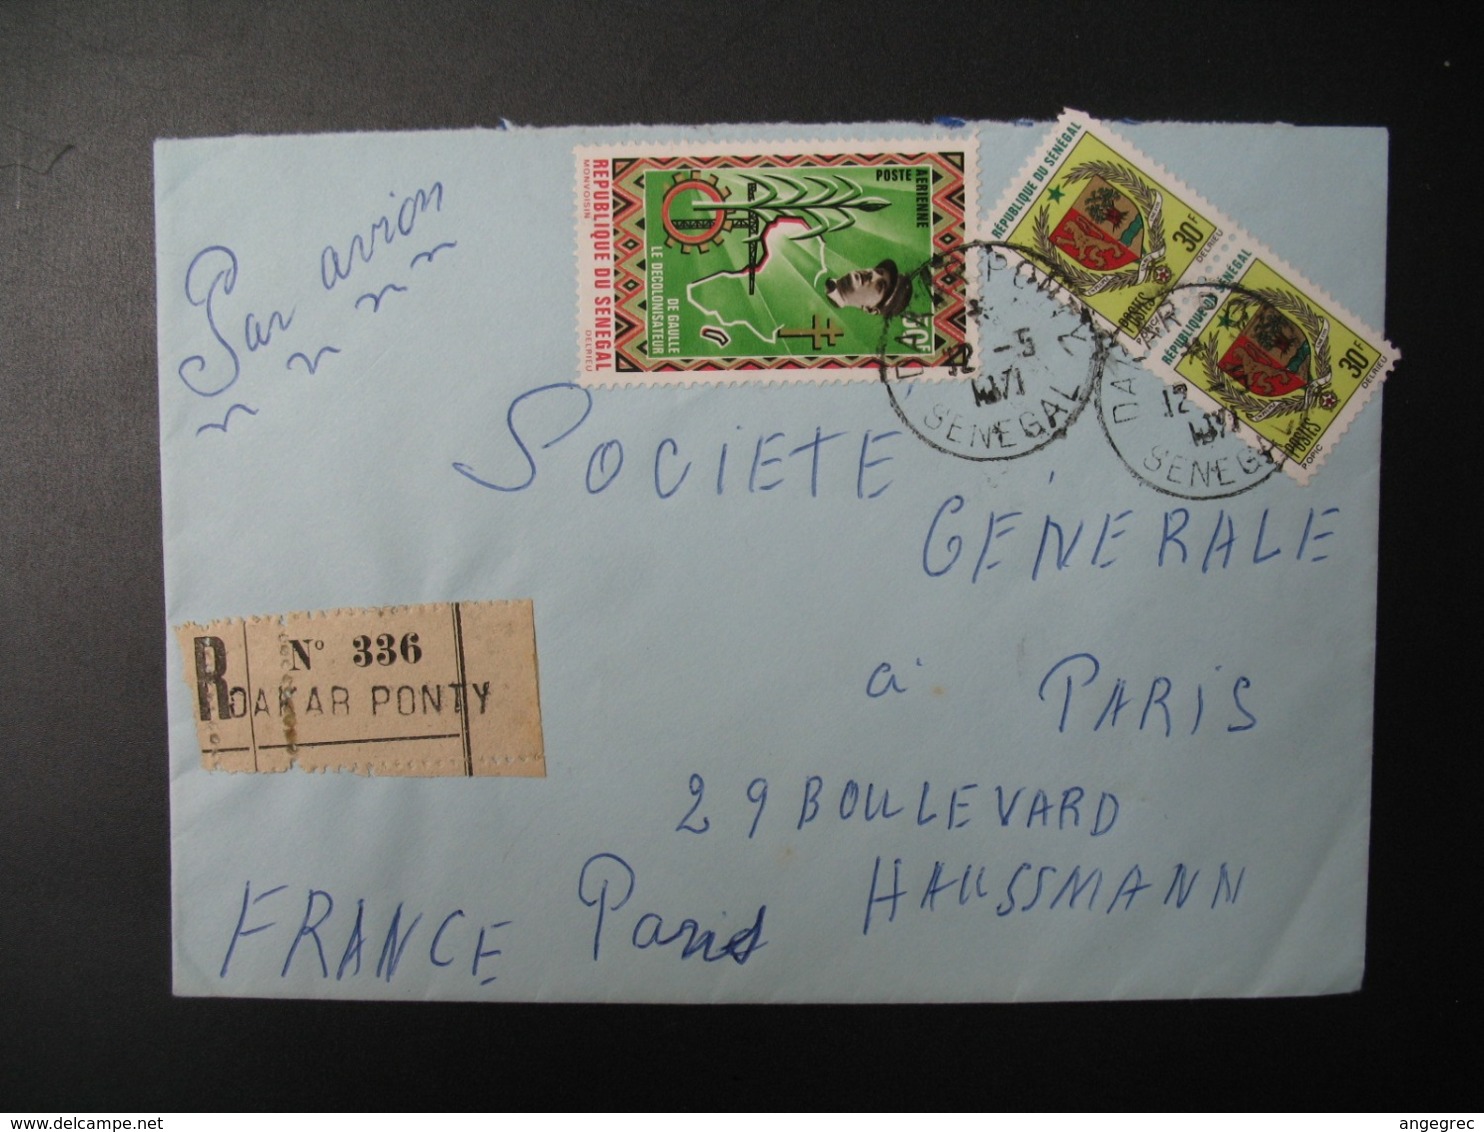 Sénégal  Lettre Recommandée N° 336 - 1971  Agence Dakar Ponty  Pour La Sté Générale En France   Bd Haussmann   Paris - Sénégal (1960-...)